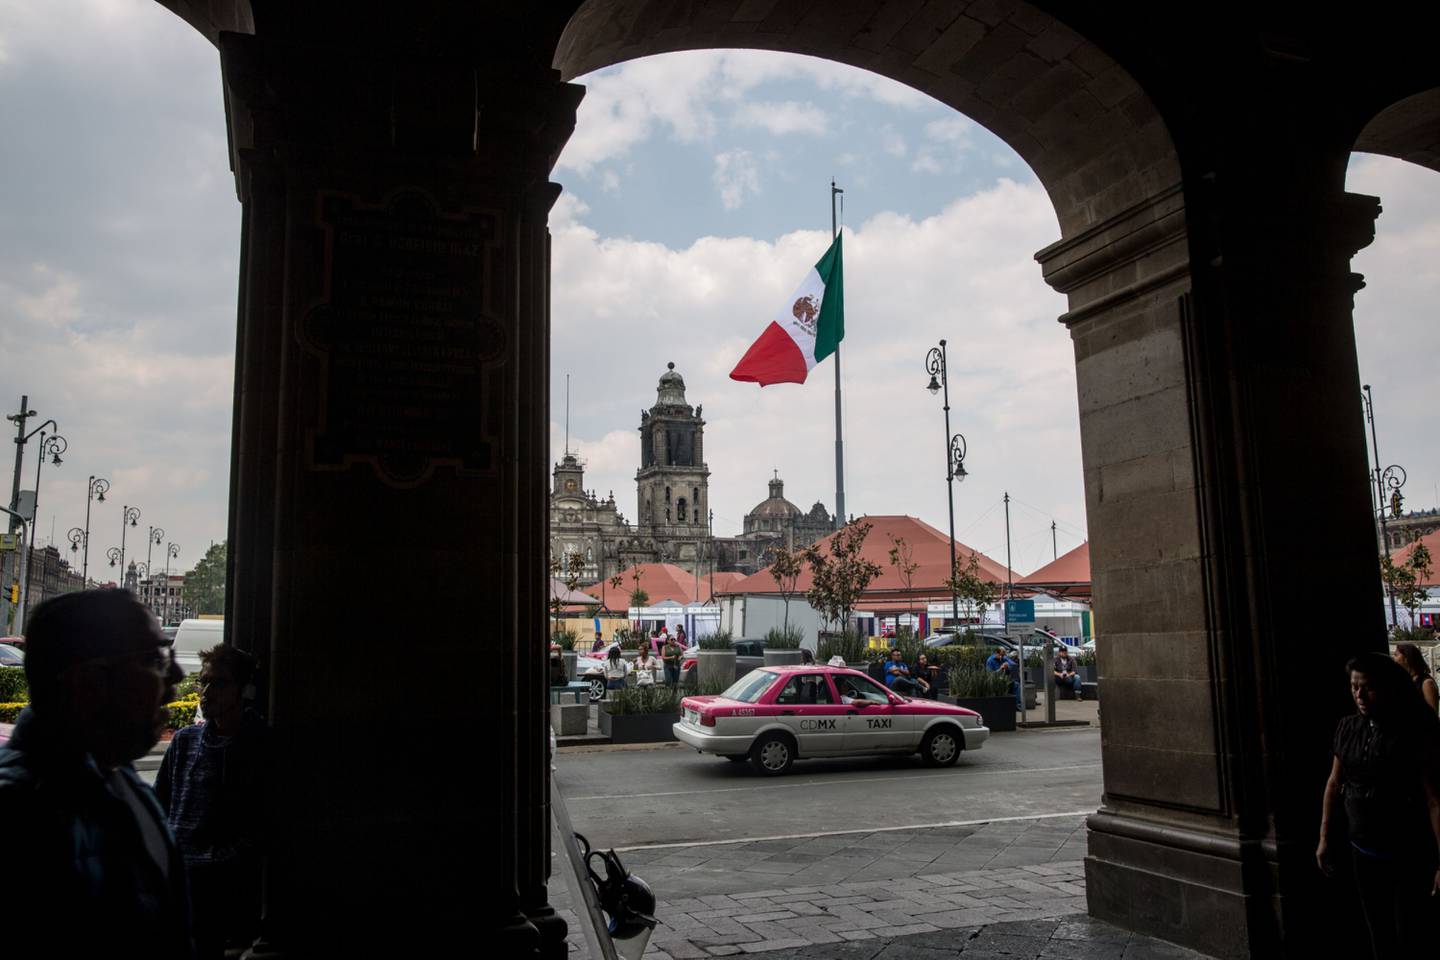 Un taxi pasa frente a la bandera mexicana que ondea en la Plaza de la Constitución (Zócalo) en la Ciudad de México, México, el viernes 13 de abril de 2018.